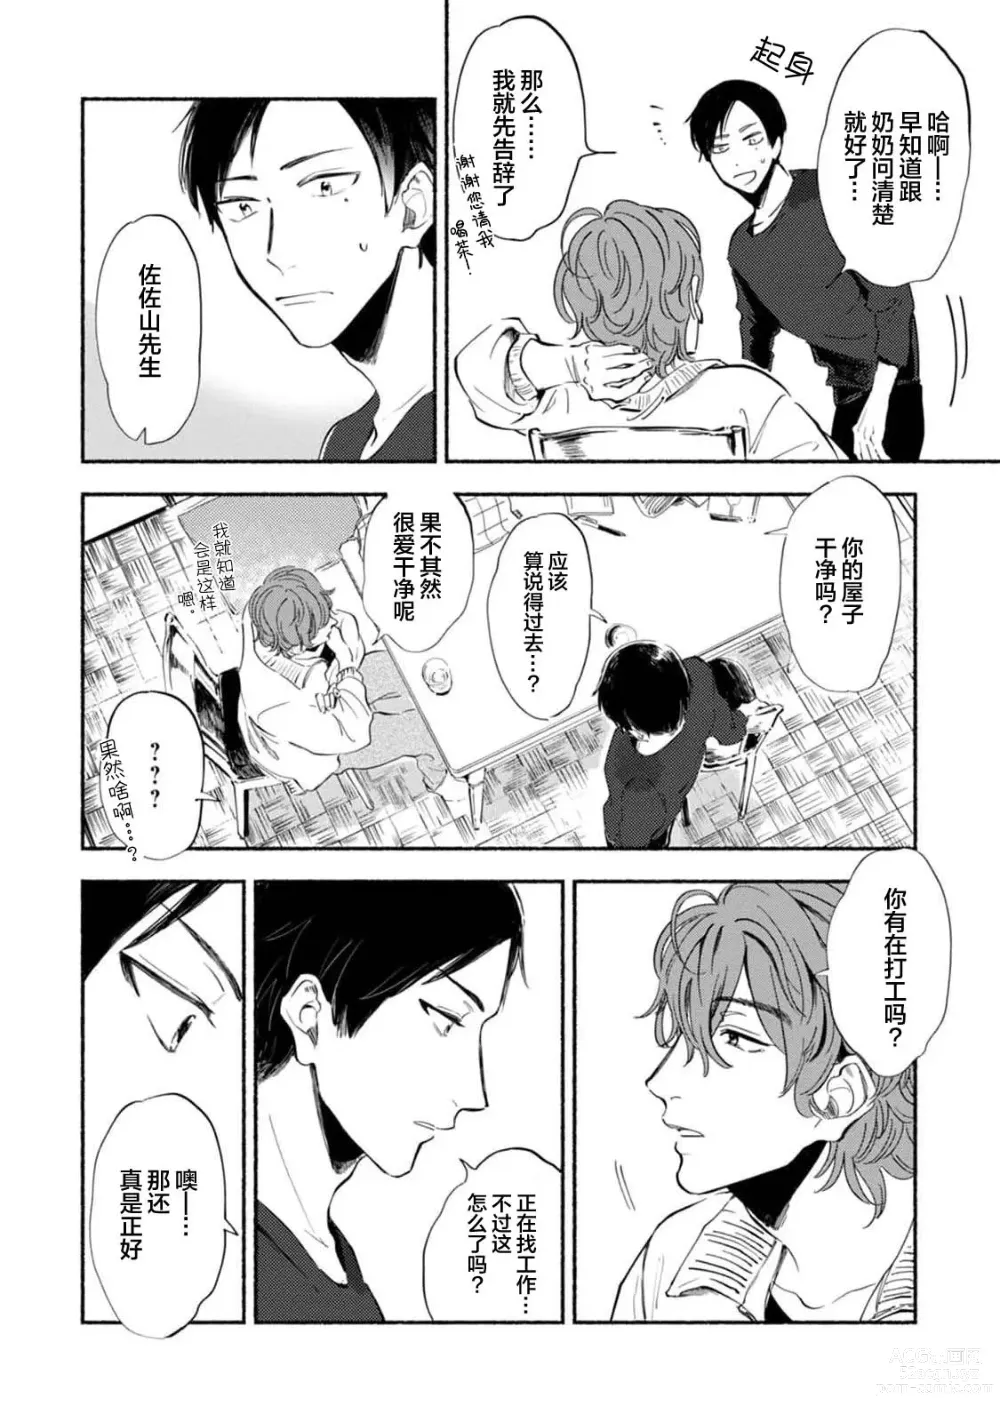 Page 30 of manga 与春为邻